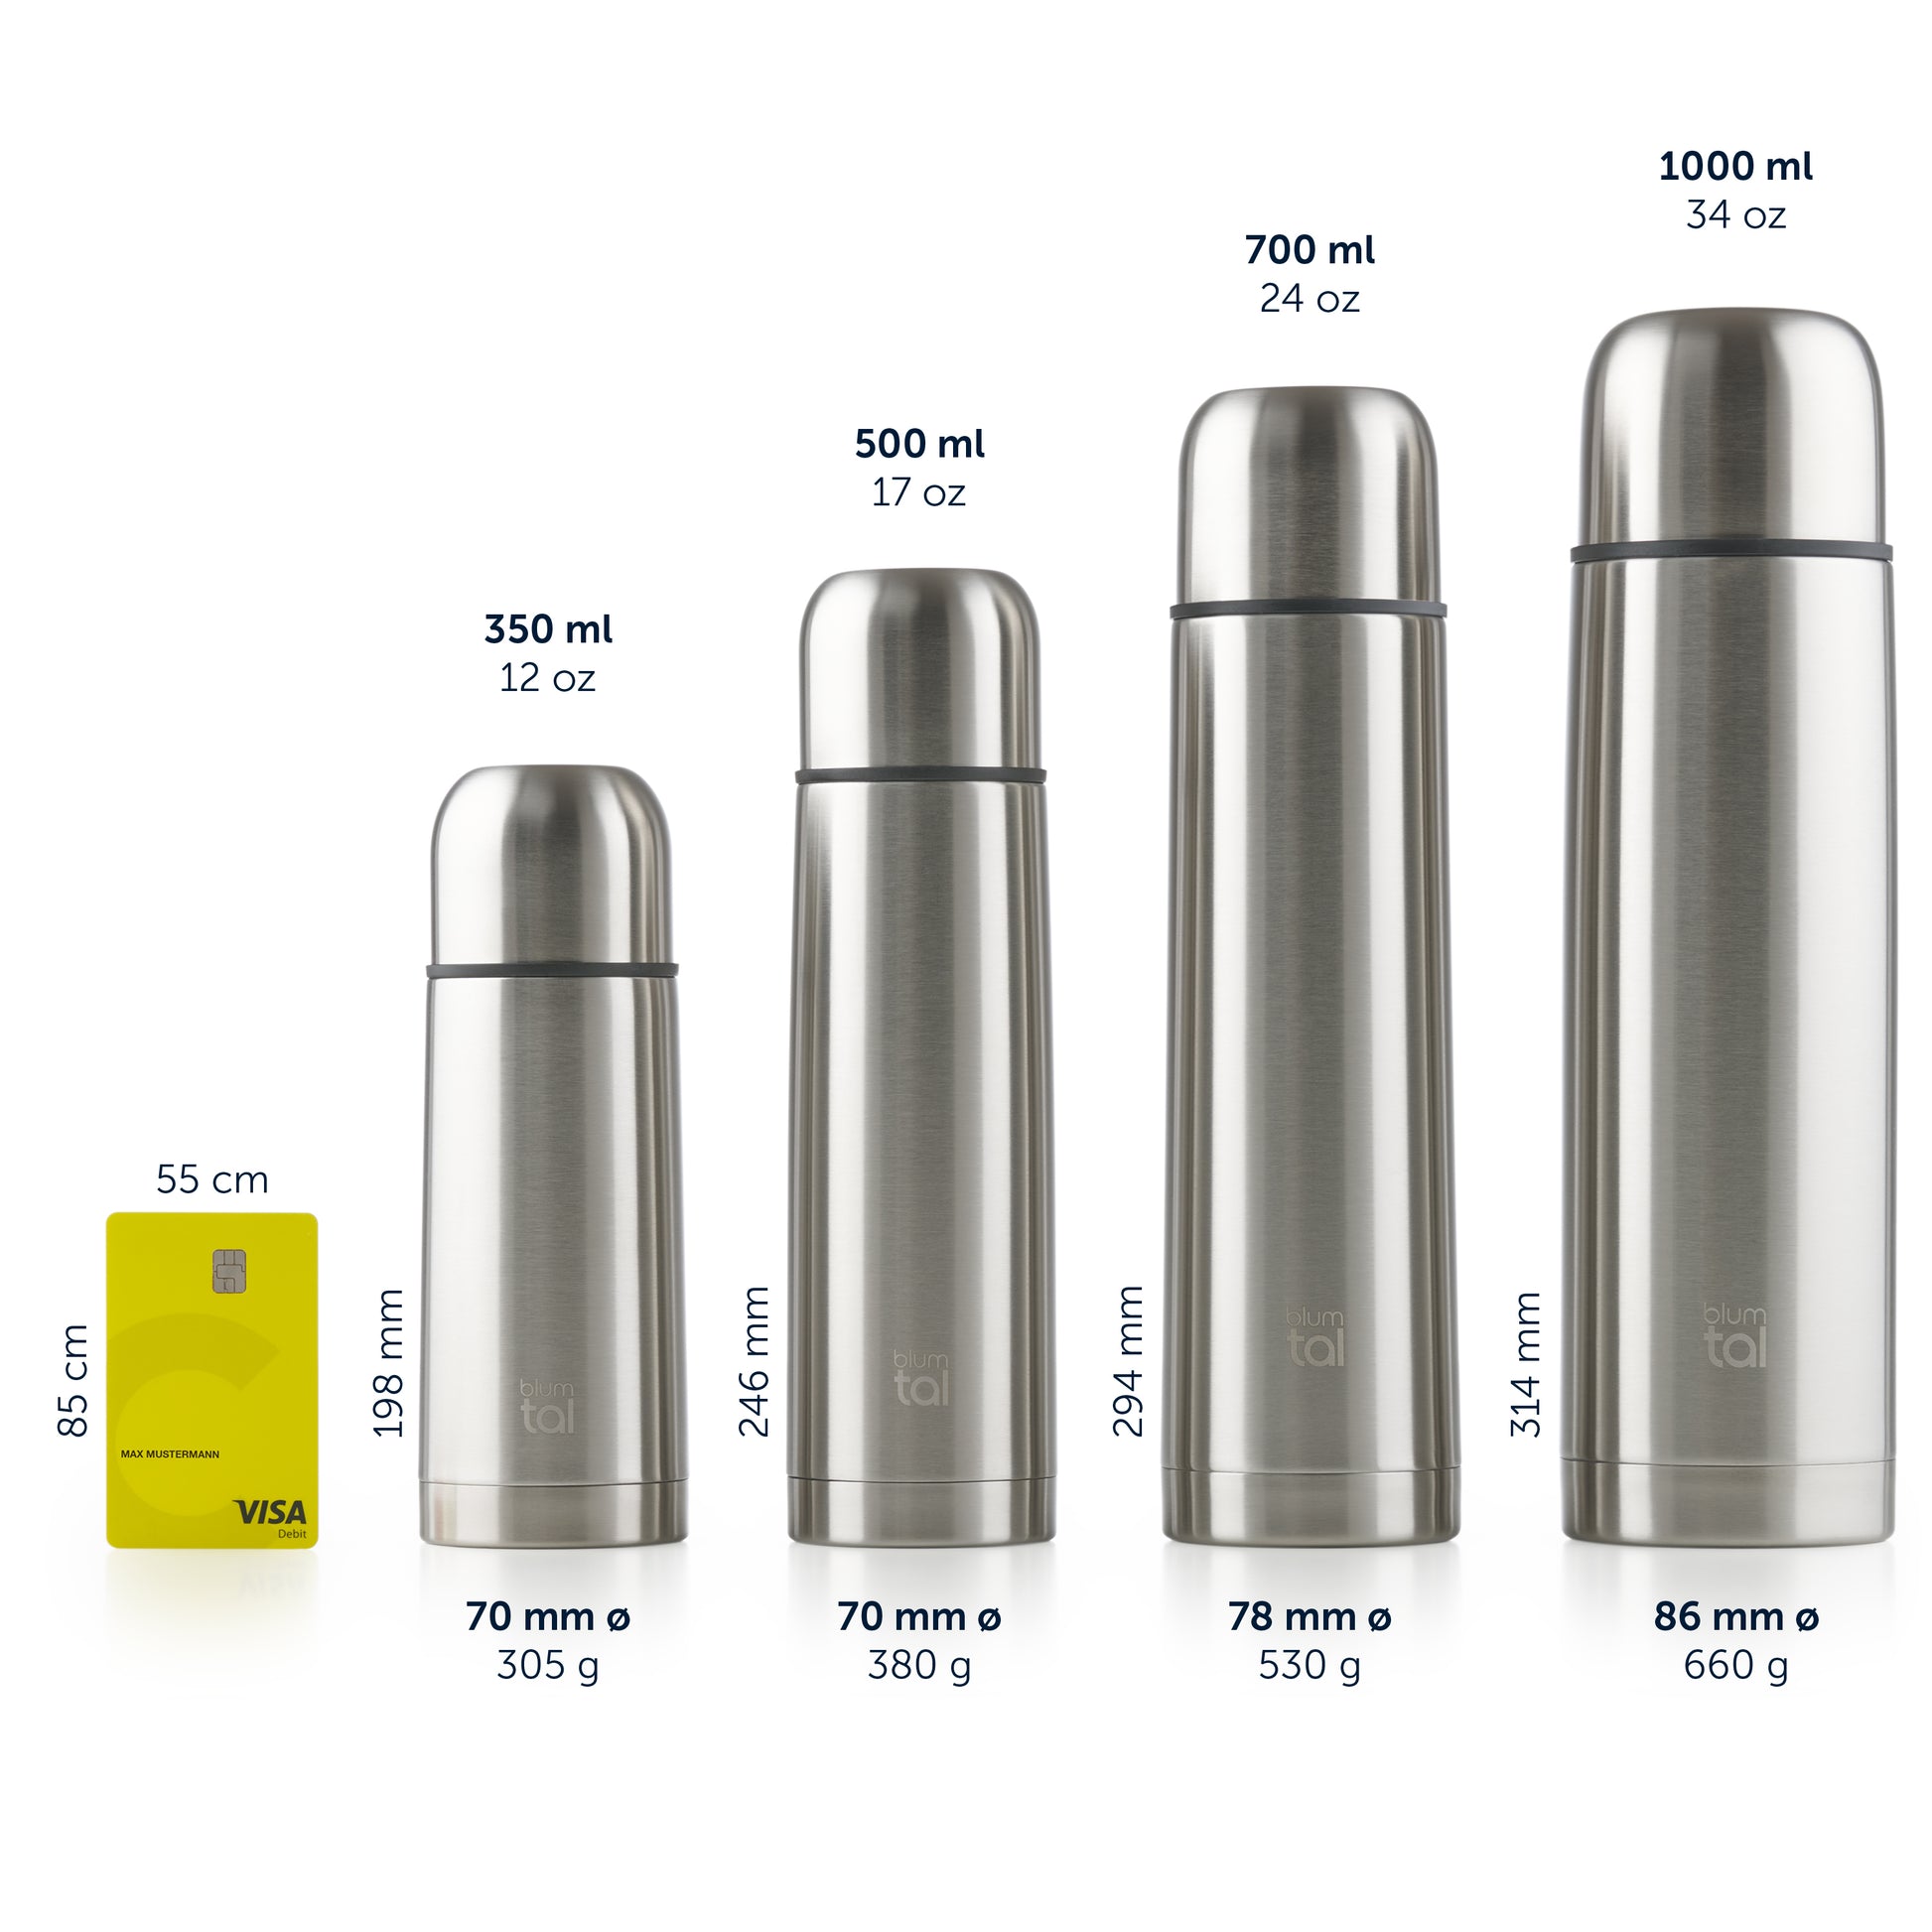 Vier Thermosflaschen unterschiedlicher Größe nebeneinander aufgereiht mit Volumenangaben und einer Kreditkarte zur Größenveranschaulichung.